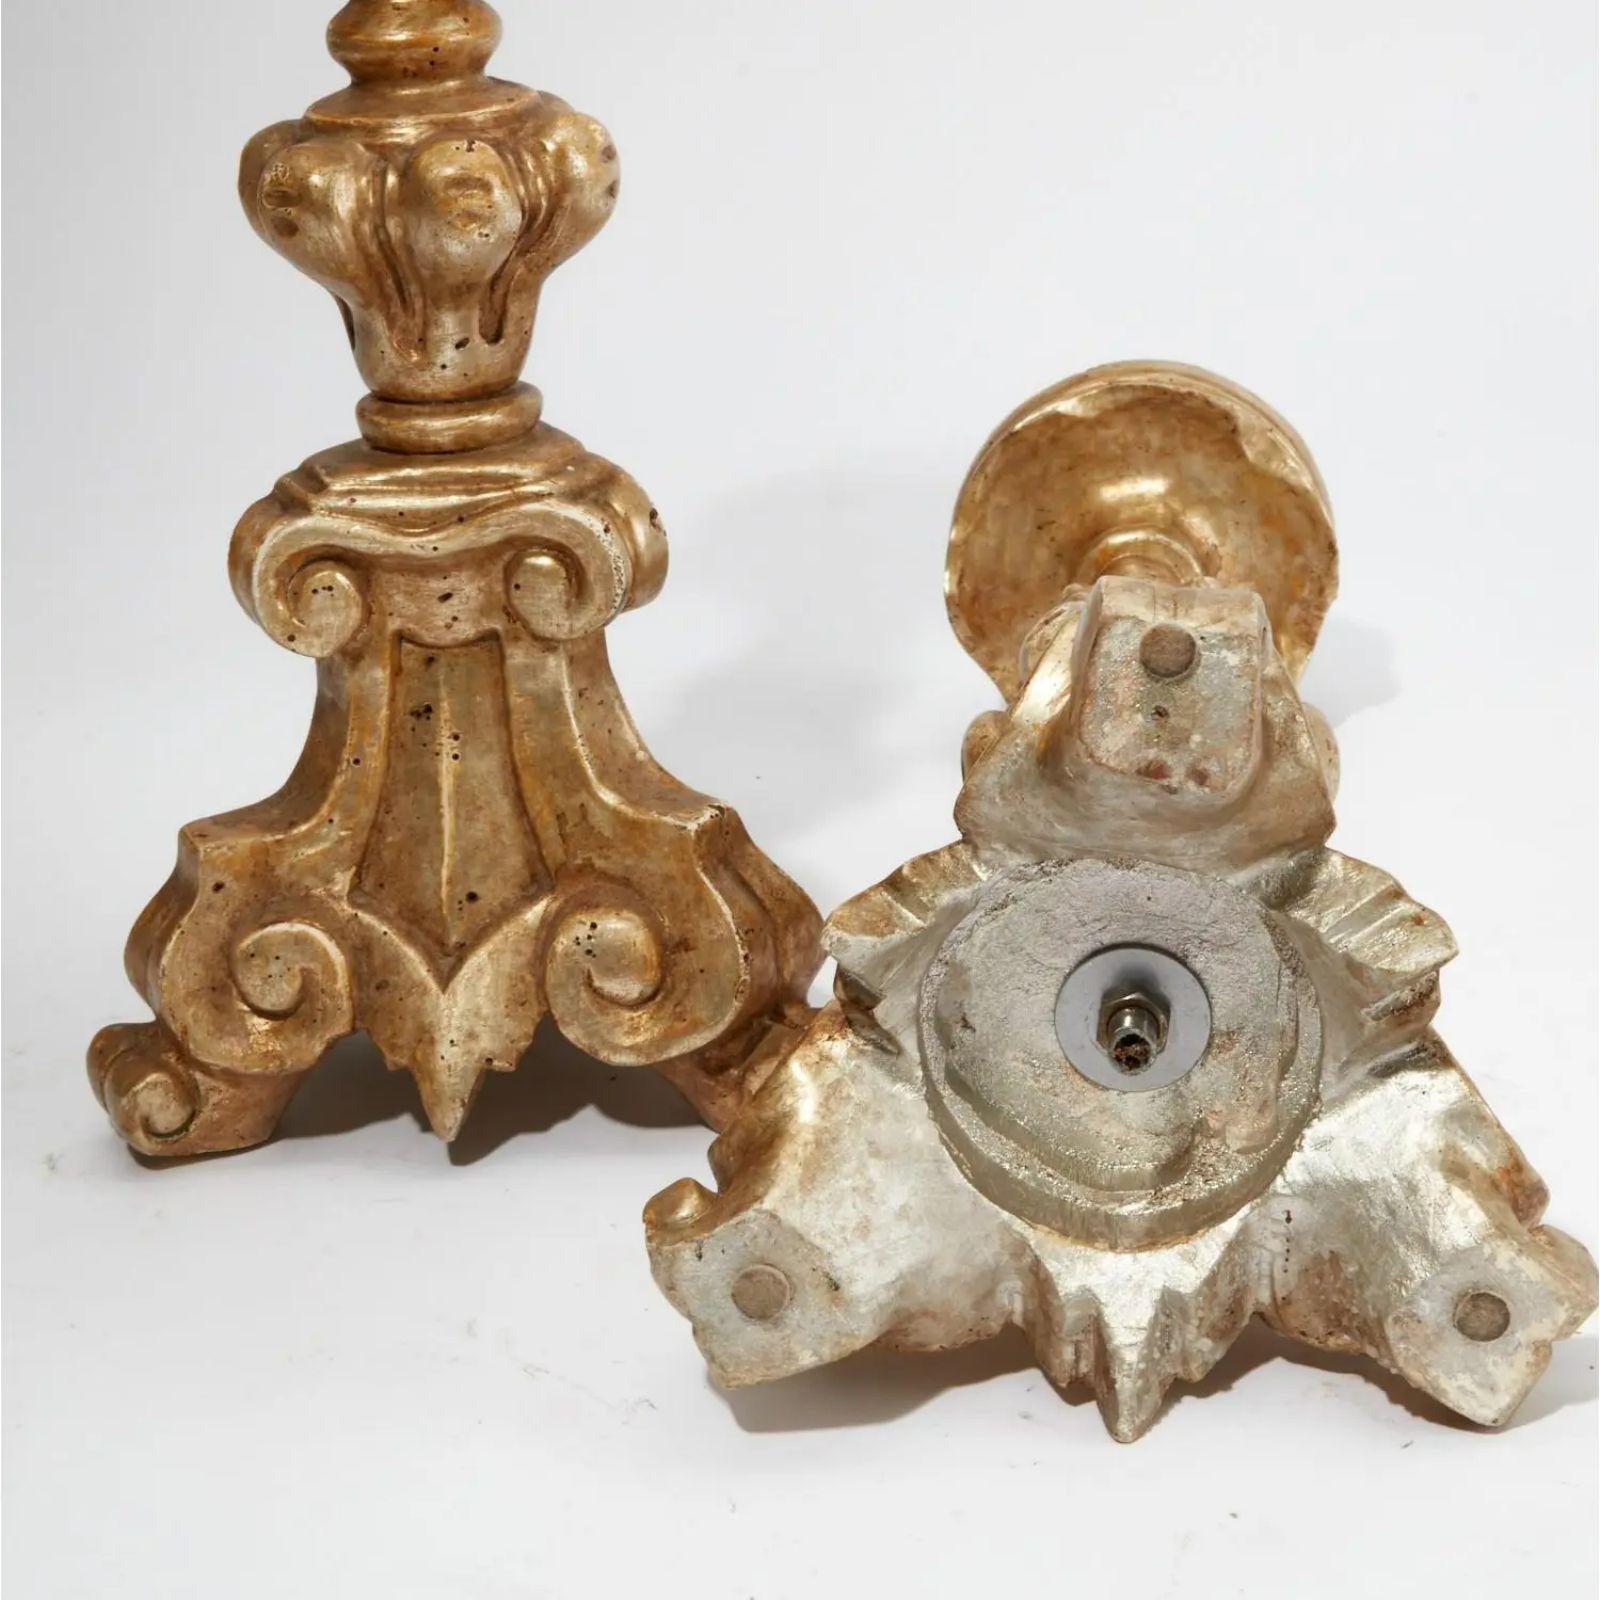 Paire de chandeliers italiens de style 18ème siècle en bois doré. Chaque pièce est signée Thomas Morgan et présente une véritable finition dorée à l'or blanc sur du bois sculpté à la main.

Informations complémentaires : 
Matériaux : Bois